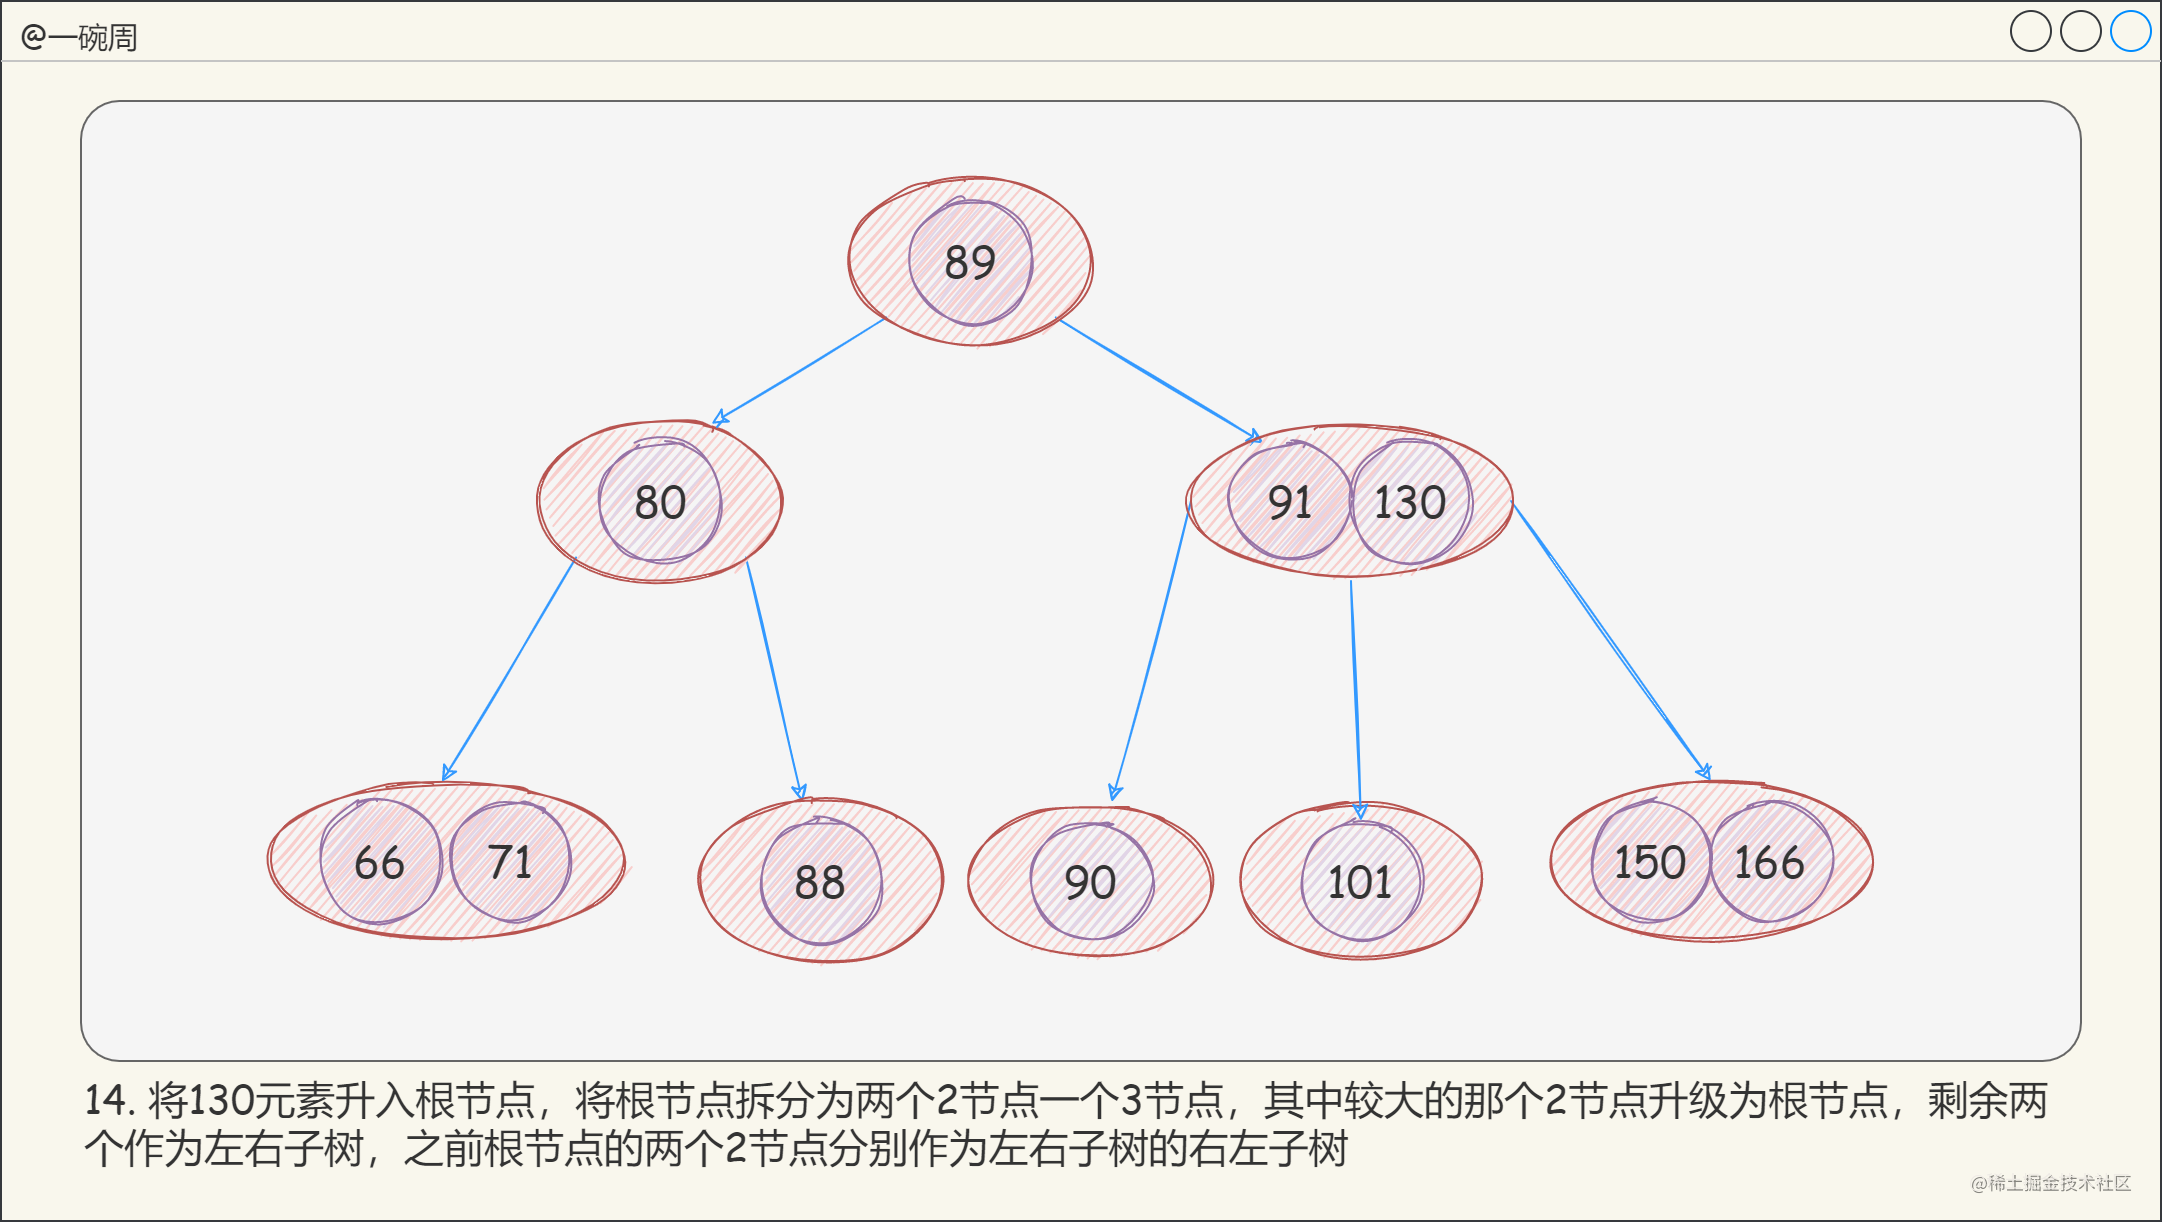 13_2-3-4树的构建过程10_gEhxK4O_ok.png